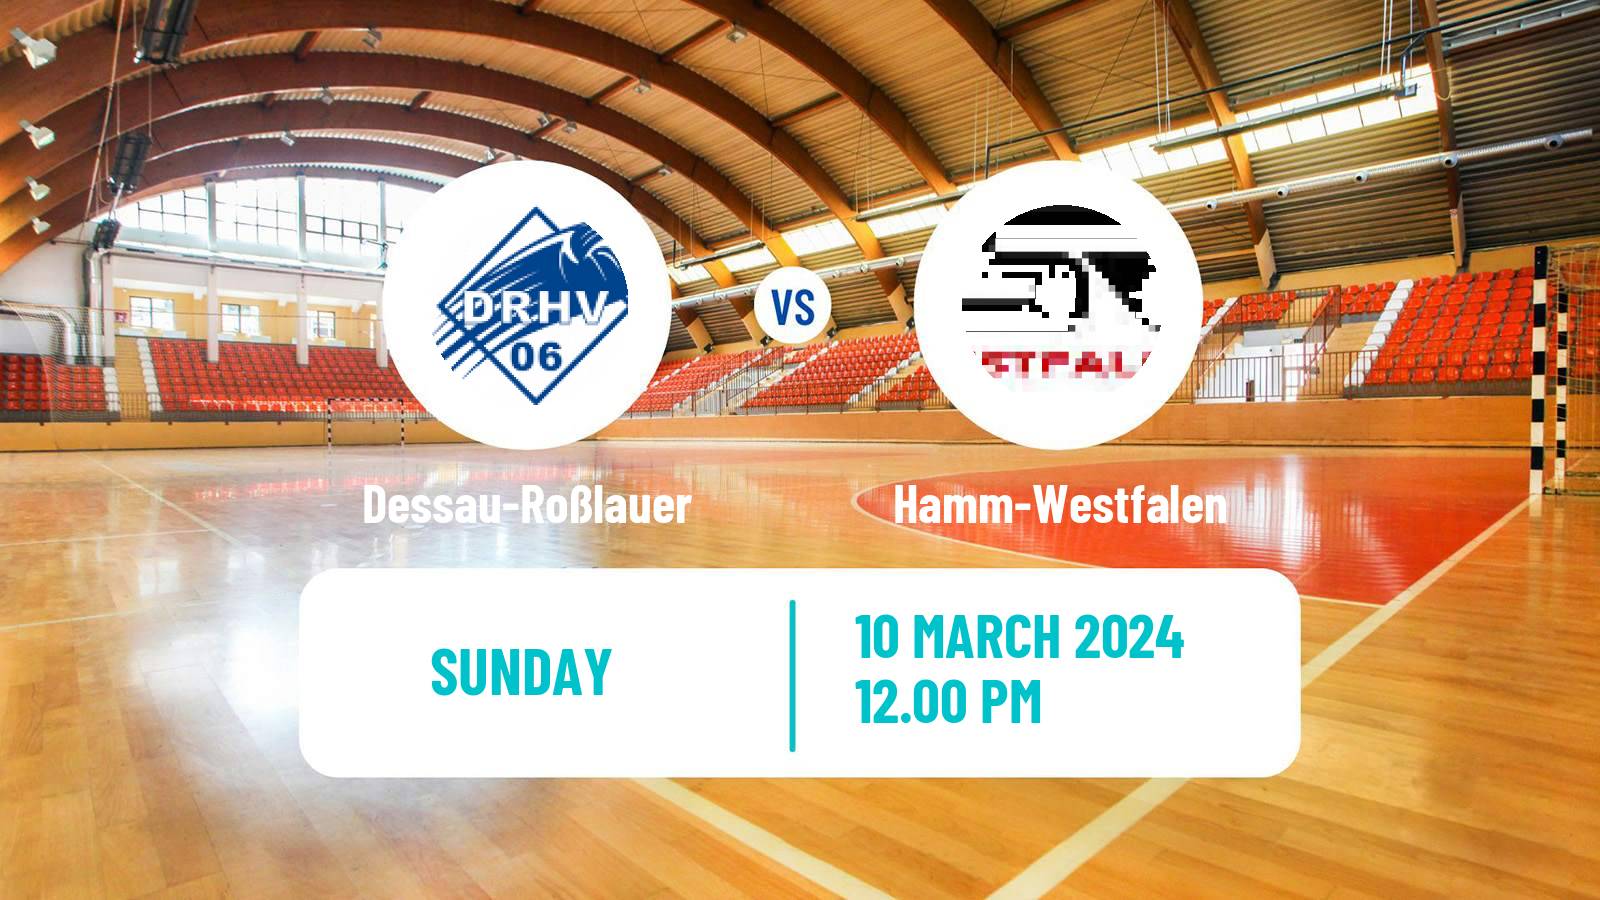 Handball German 2 Bundesliga Handball Dessau-Roßlauer - Hamm-Westfalen